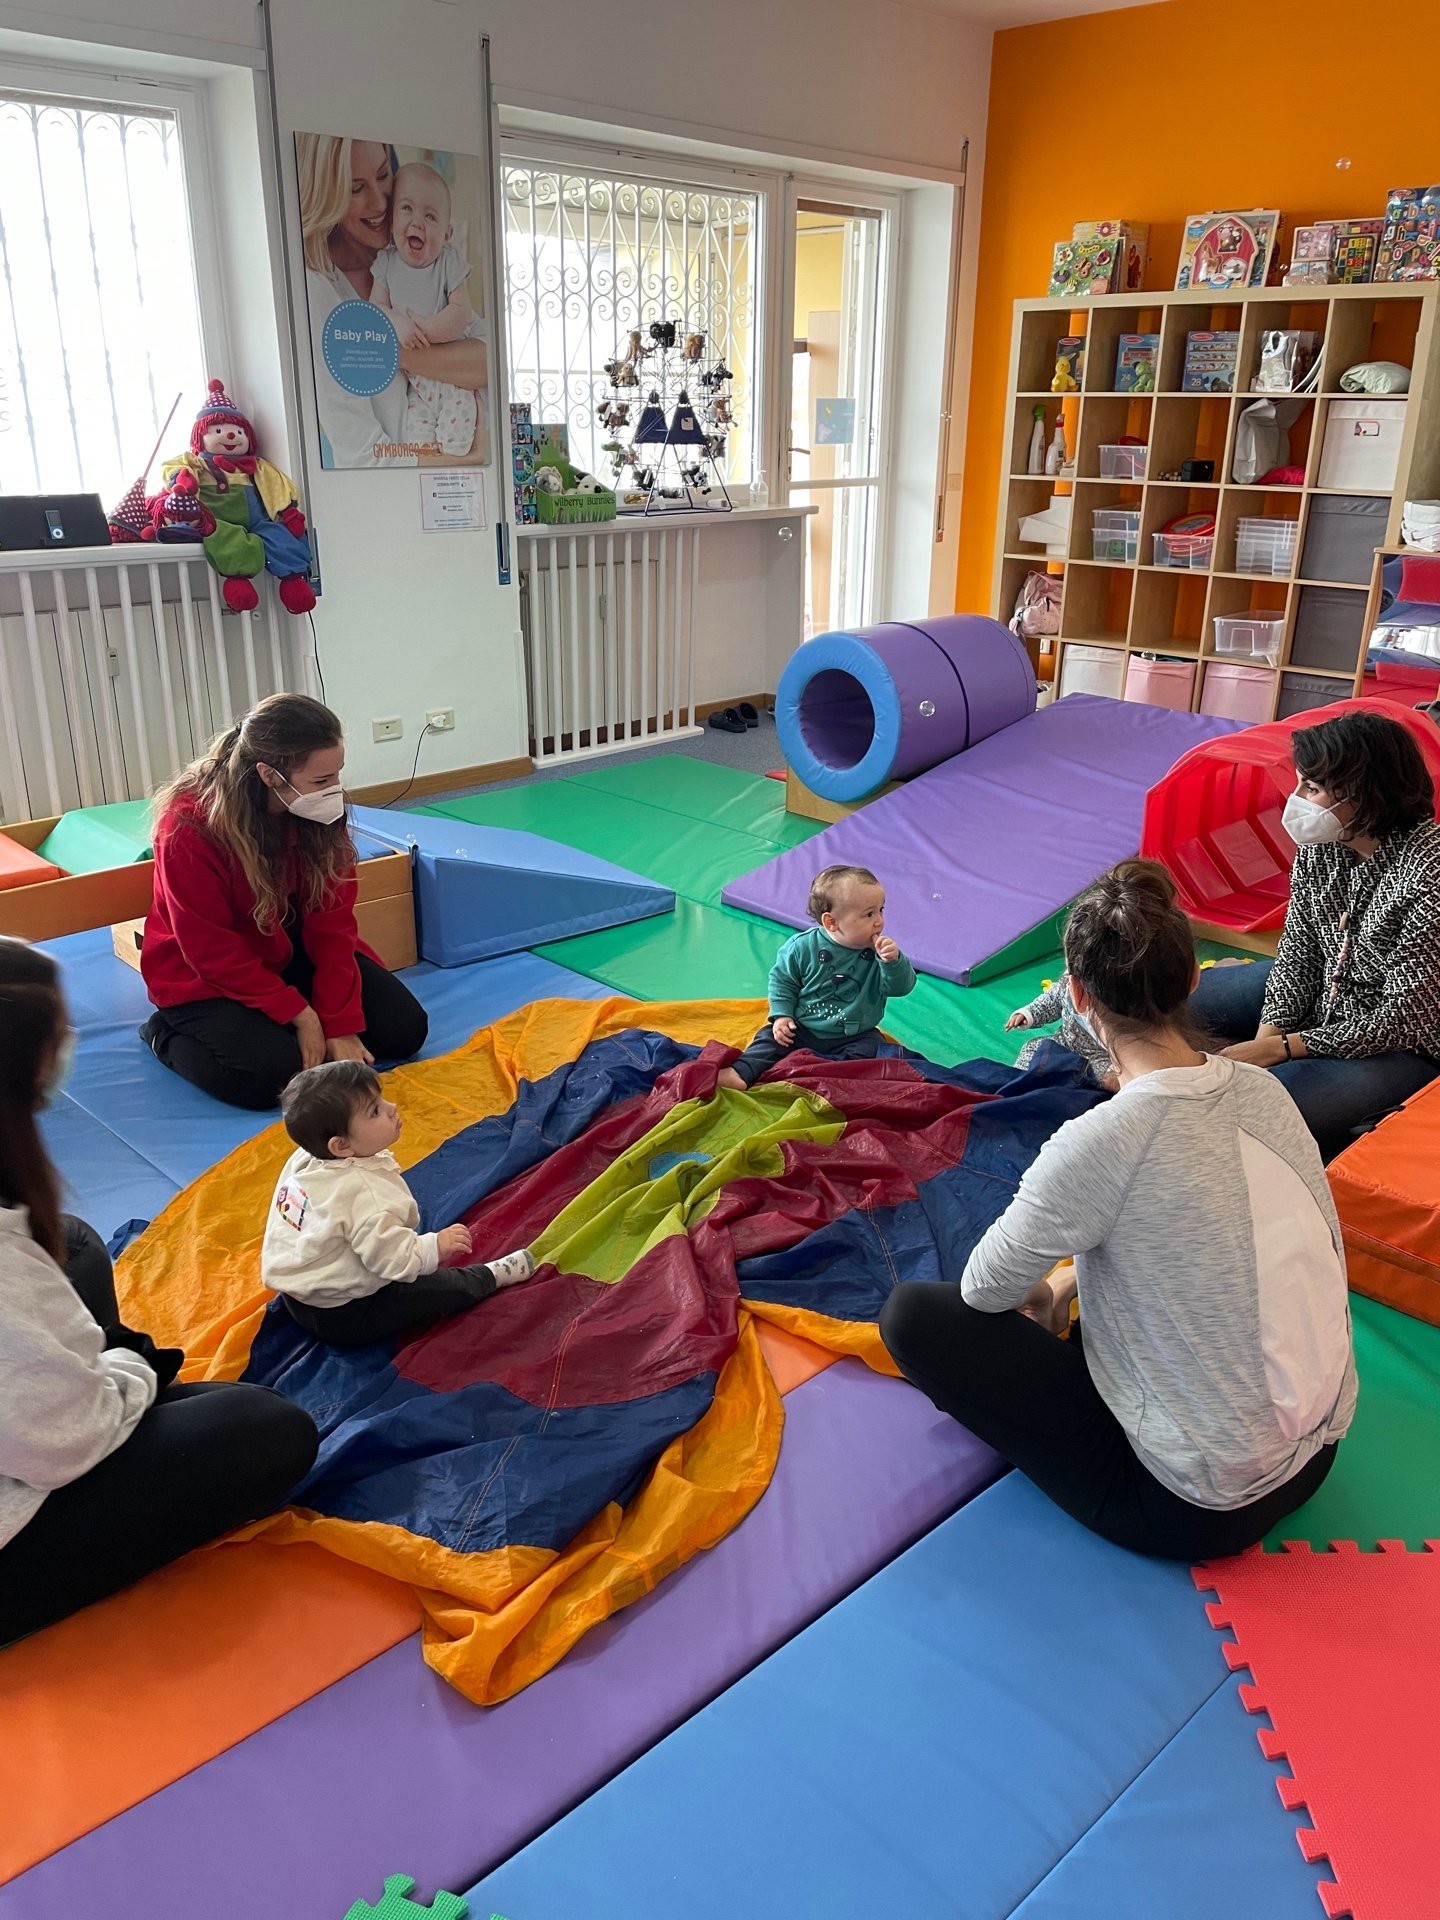 corsi neonati bambini roma mamma e bebè gymboree lezioni musica inglese motricità